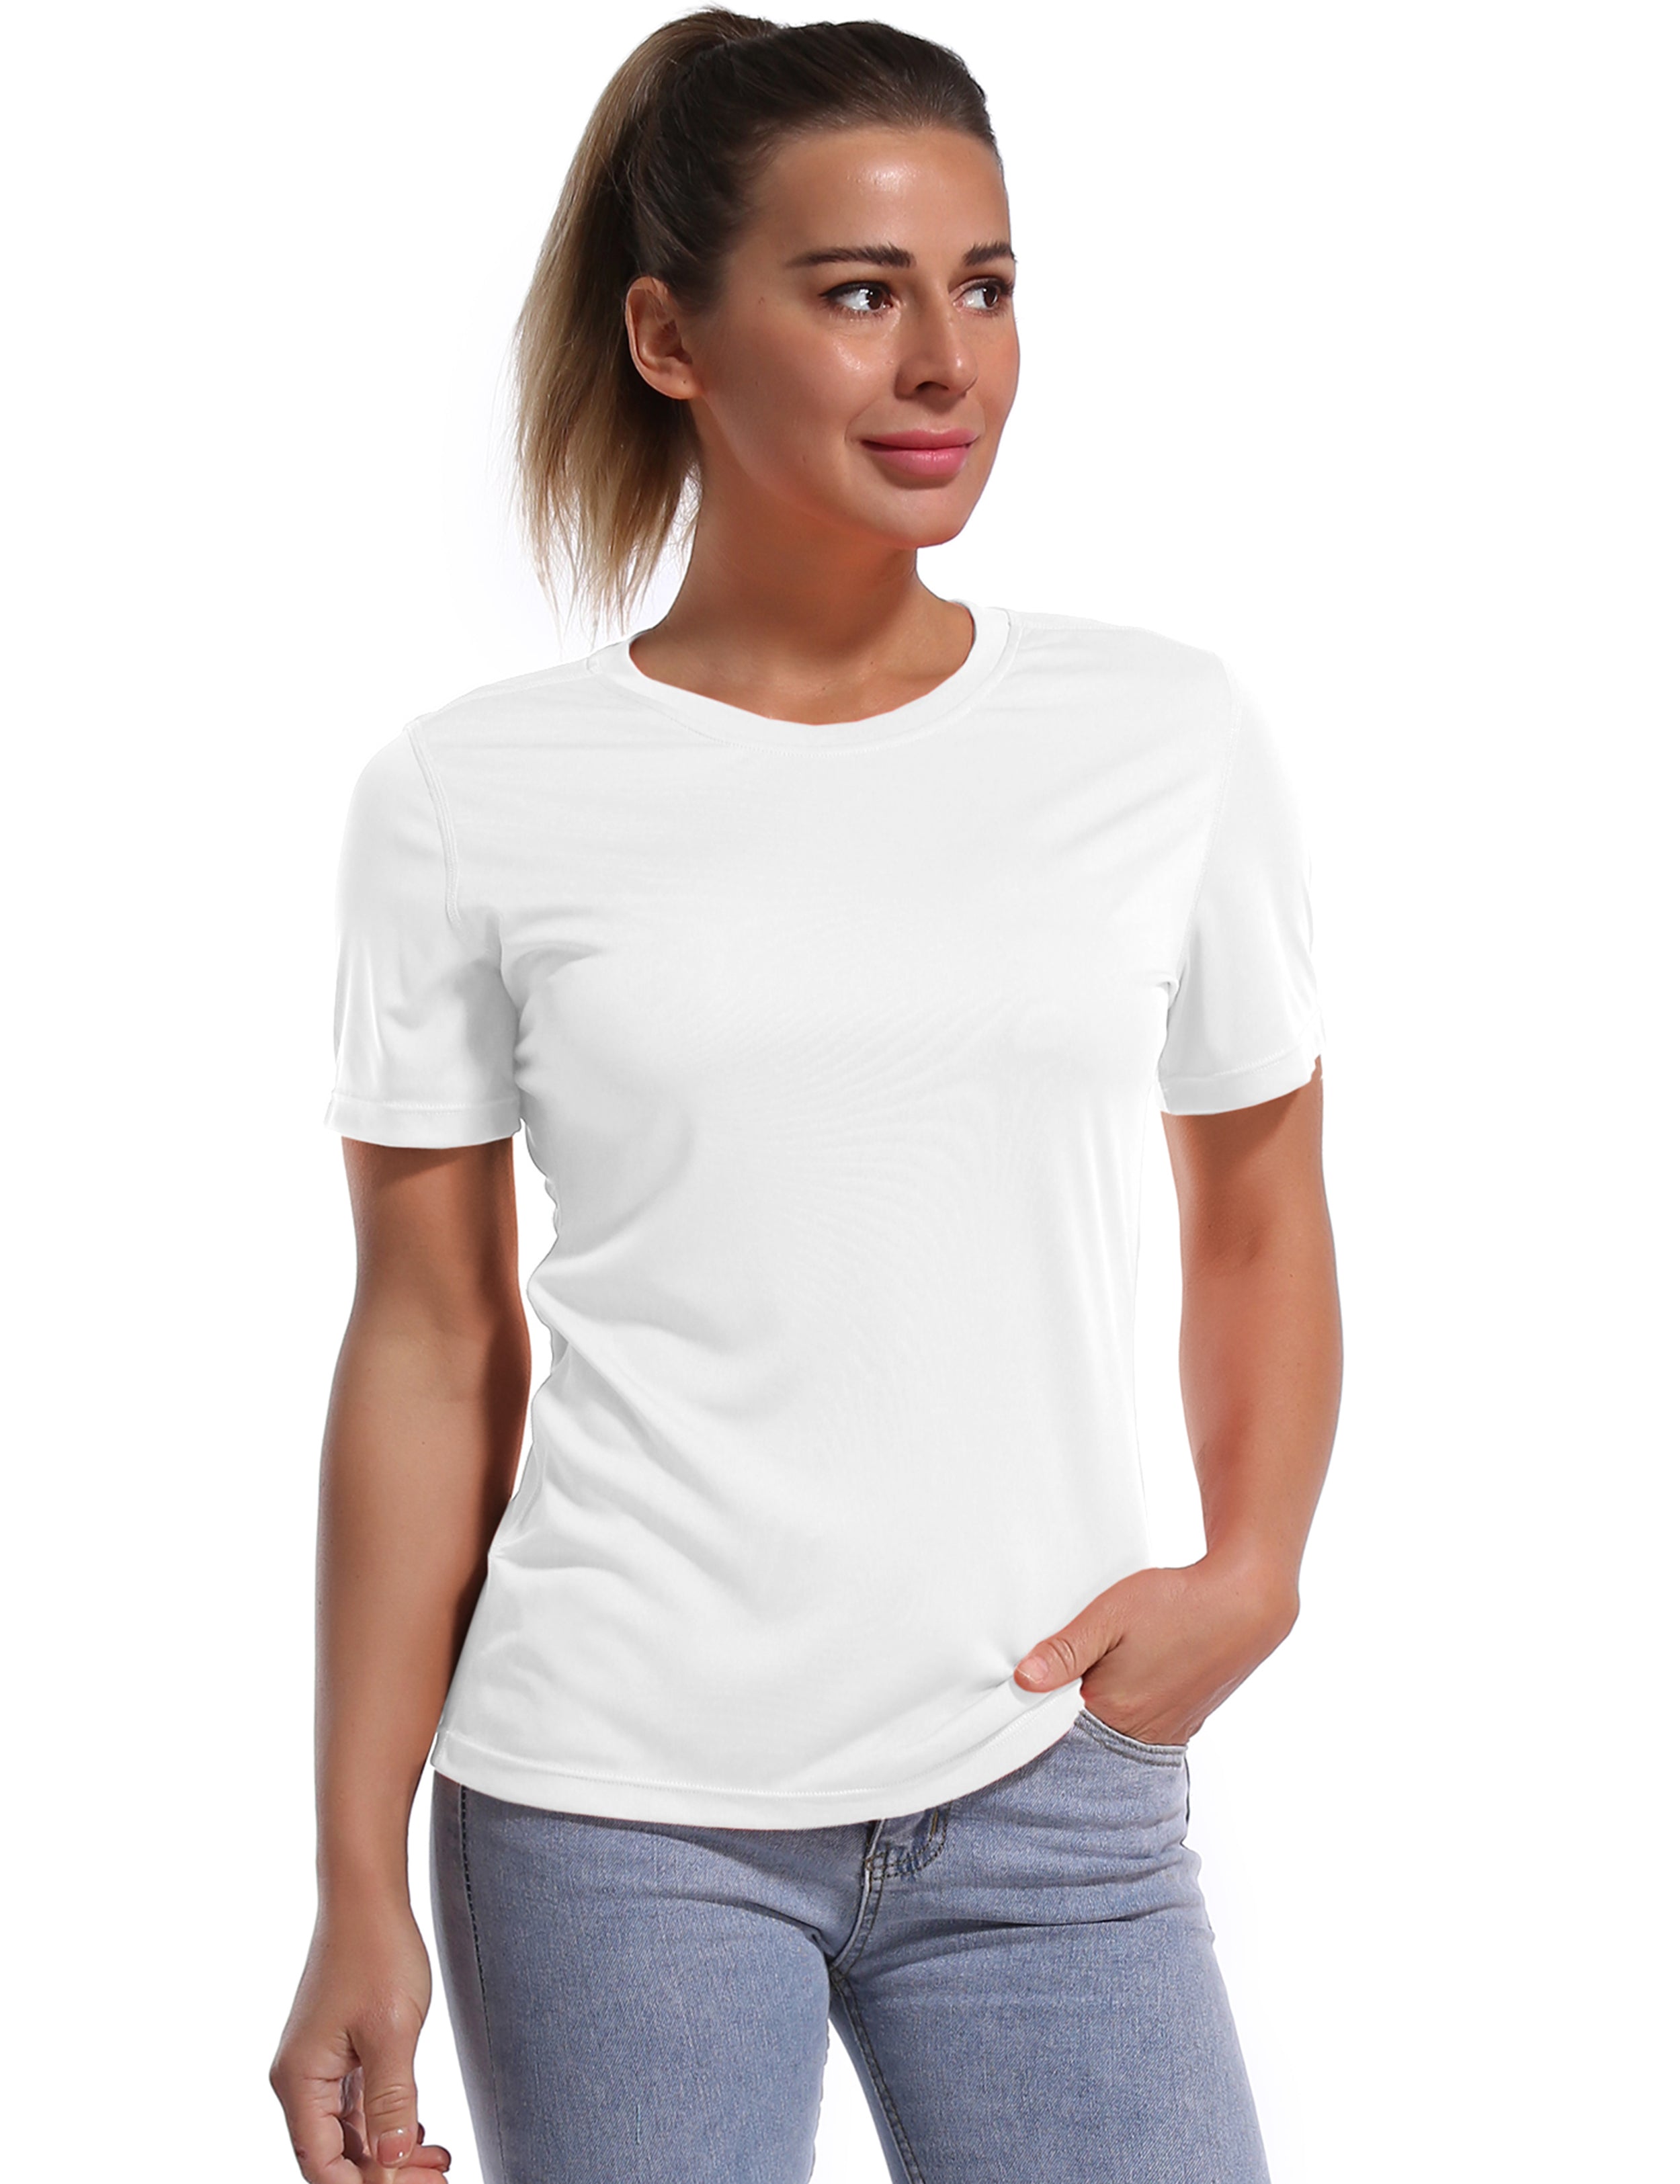 Short Sleeve Athletic Shirts white_Pilates